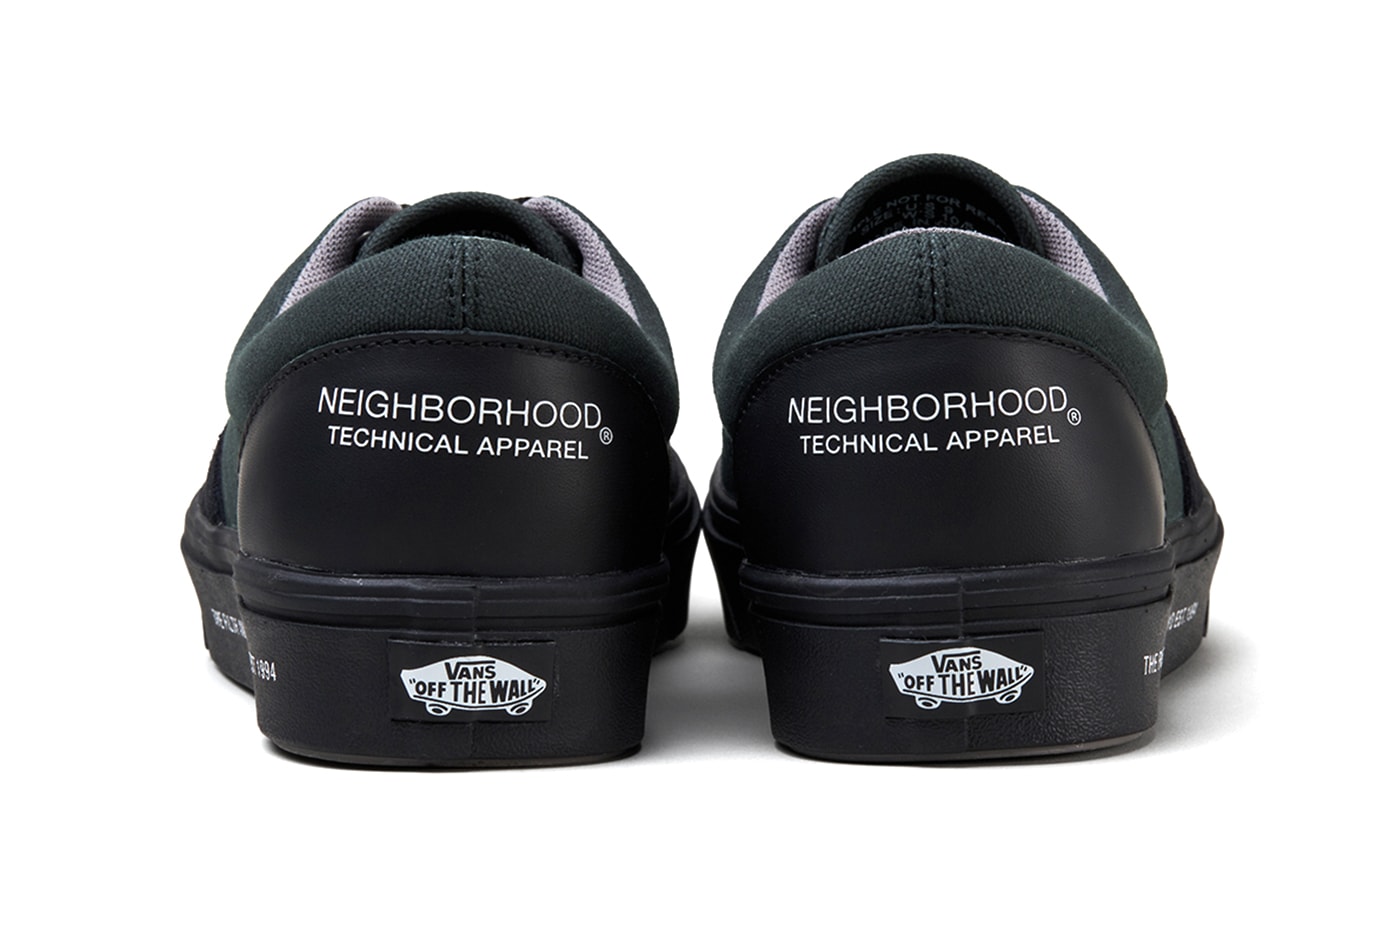 ネイバーフッド x ヴァンズ による最新コラボフットウェア2型が発売 NEIGHBORHOOD and Vans Tease Comfycush Sk8-Hi and Era Collection THE FILTH AND THE FURY shoes sneakers shoes Japan streetwear 